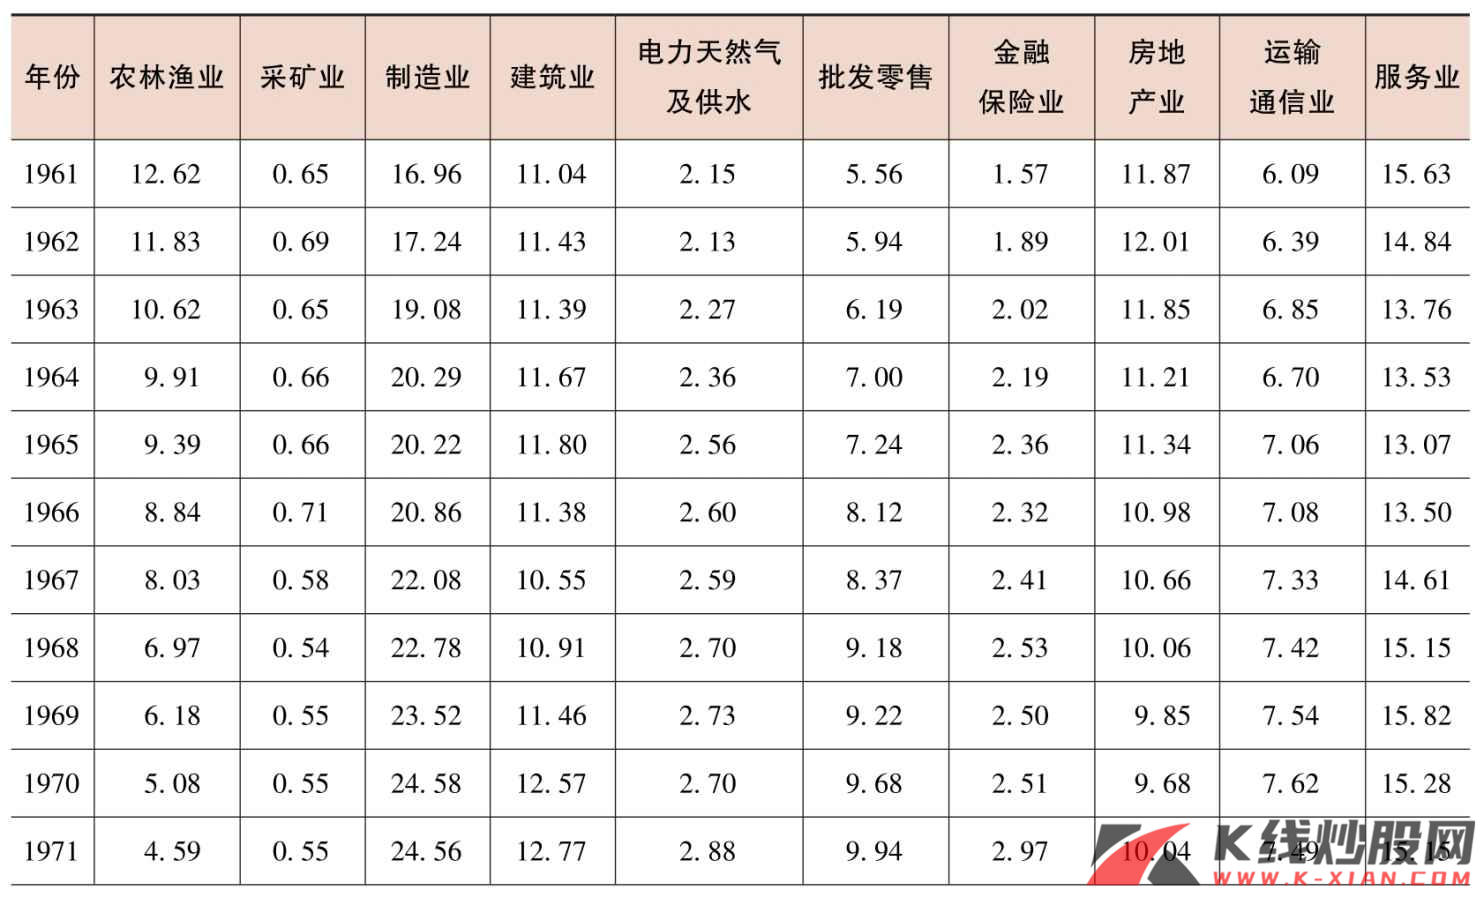 日本GDP中不同行业产值的占比（%）